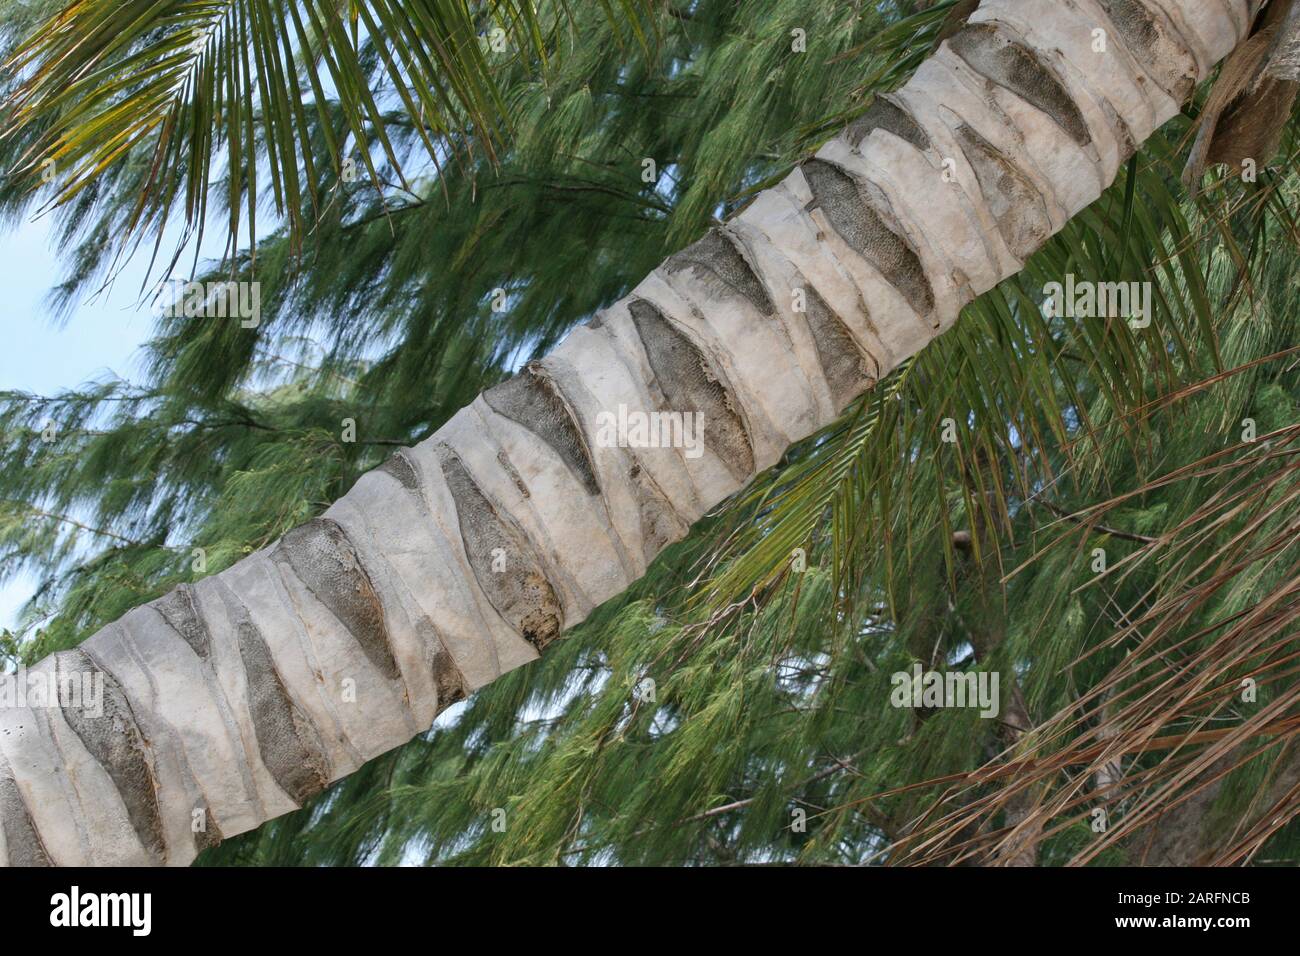 Gros plan du tronc et de l'écorce de palmier à noix de coco, île de Curieuse, Seychelles. Banque D'Images